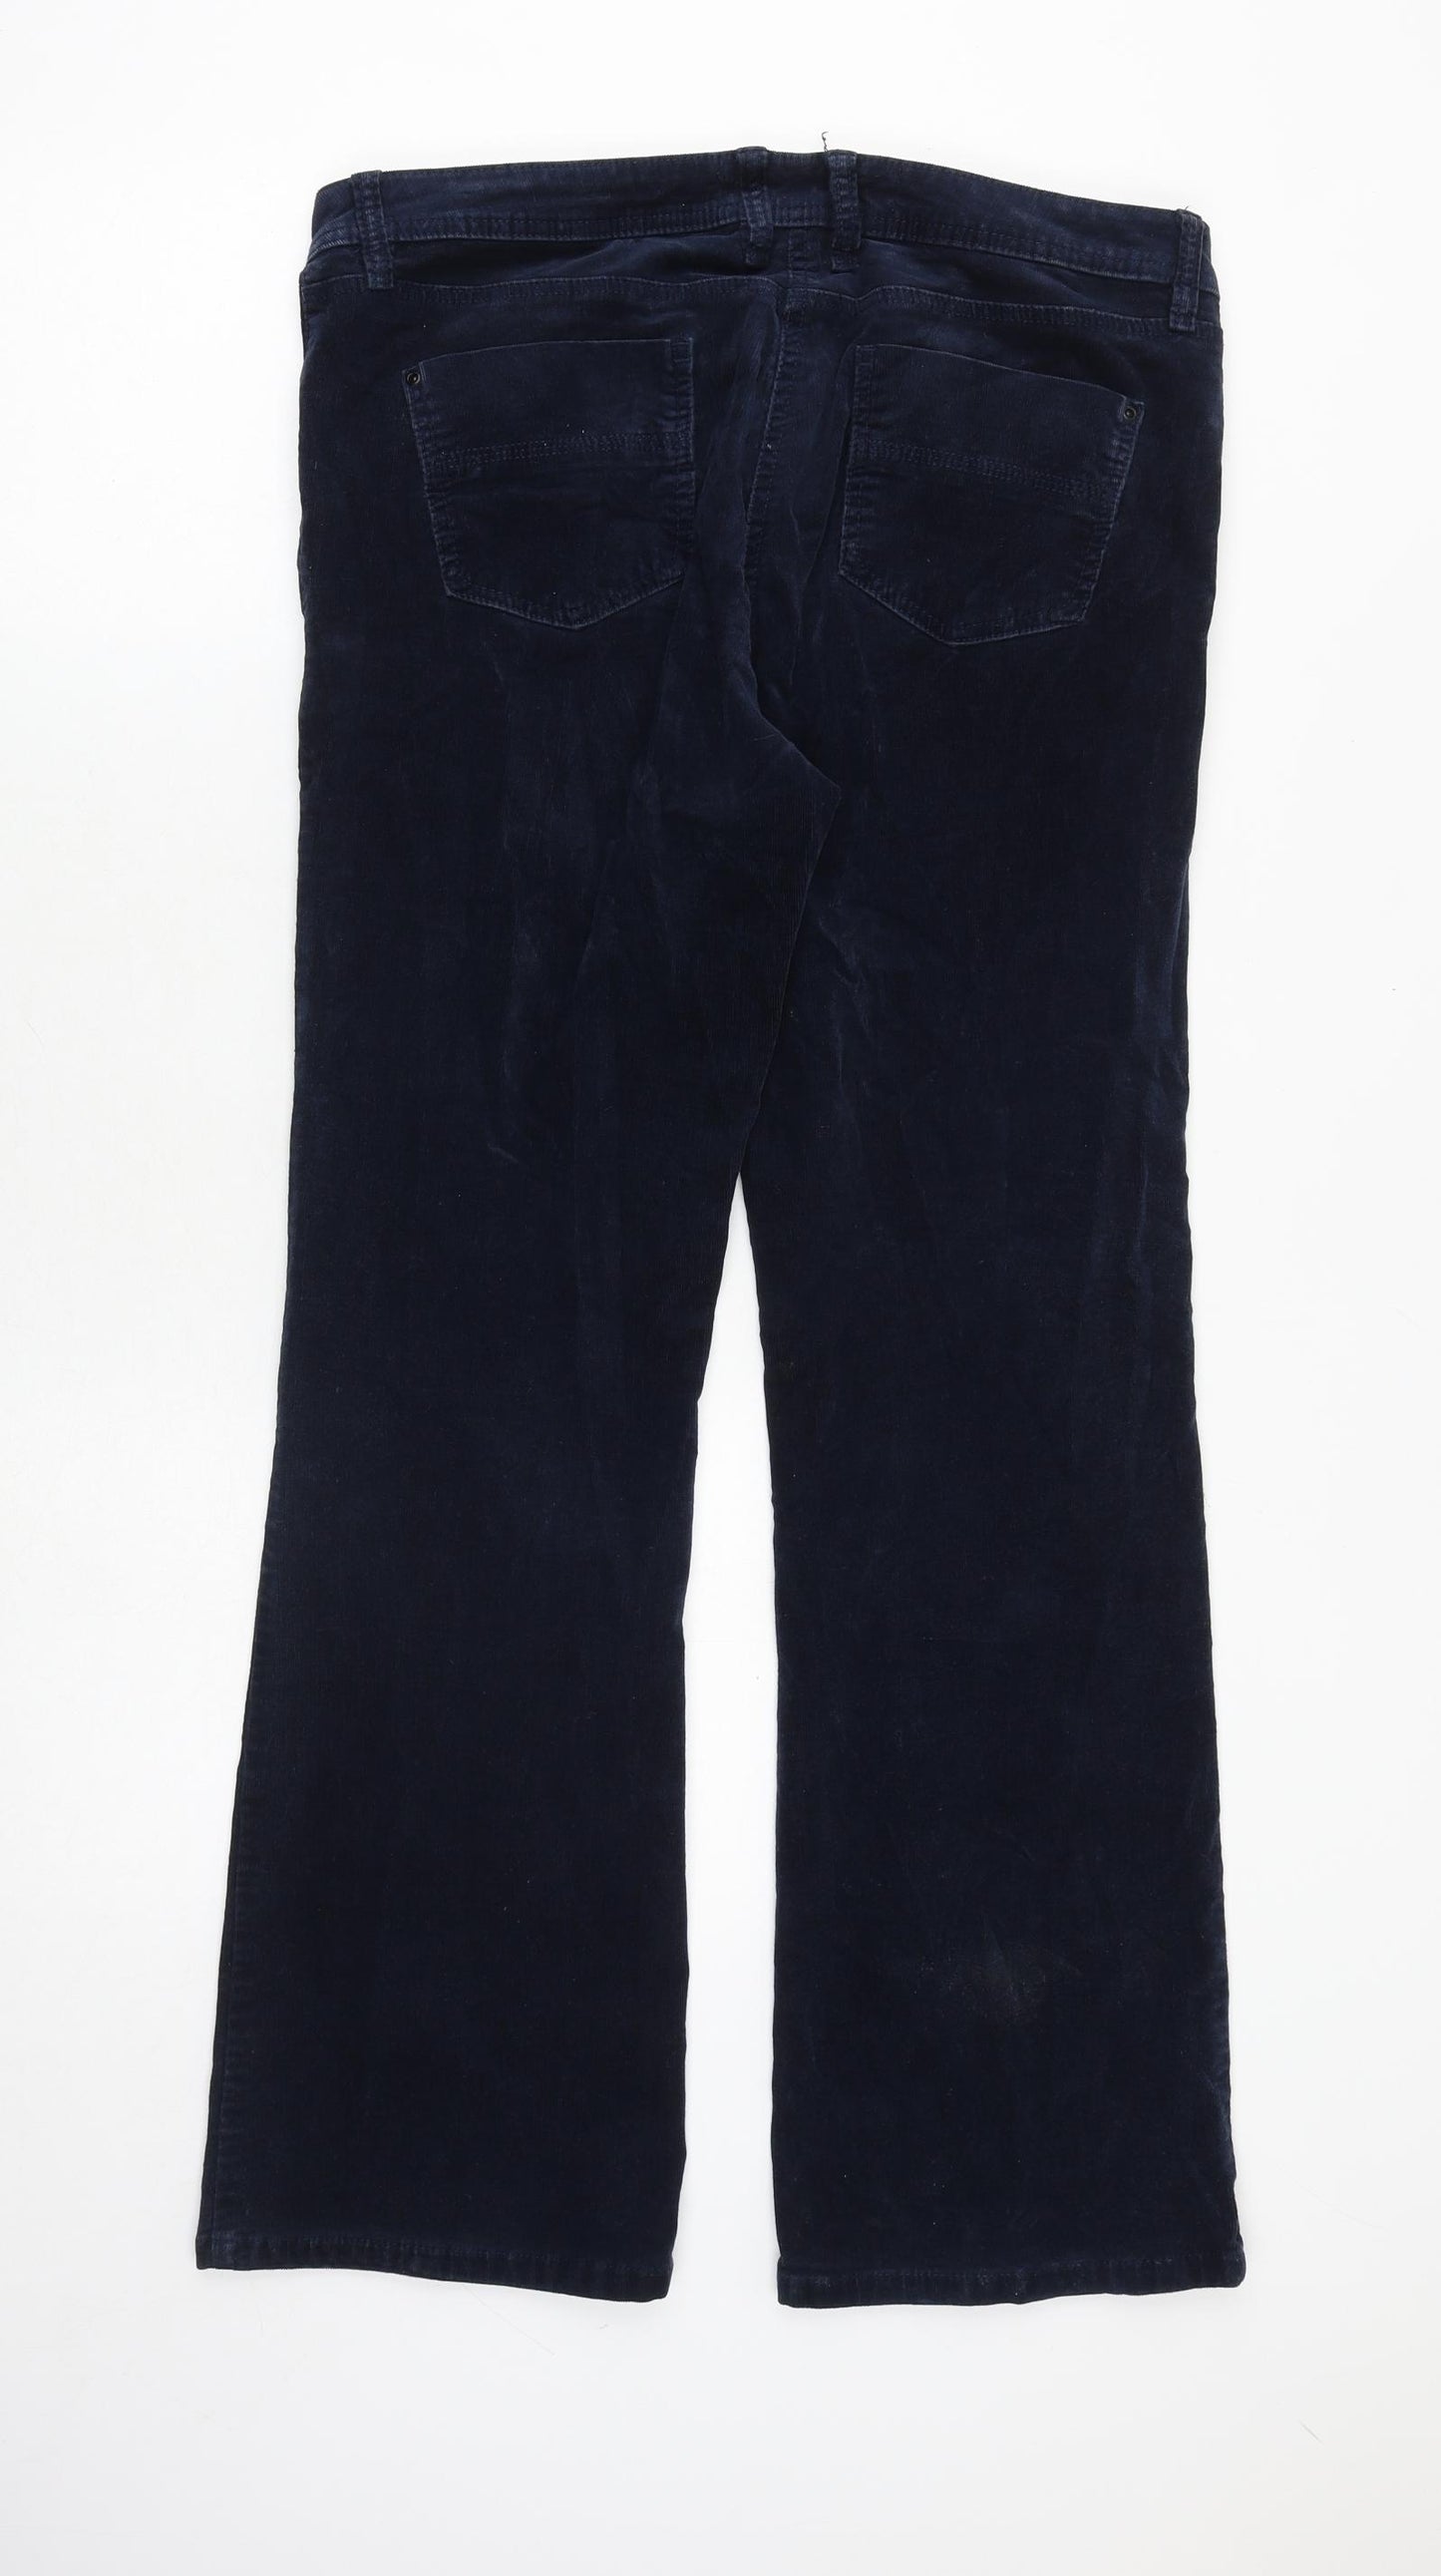 NEXT Womens Blue Cotton Trousers Size 14 Regular Zip